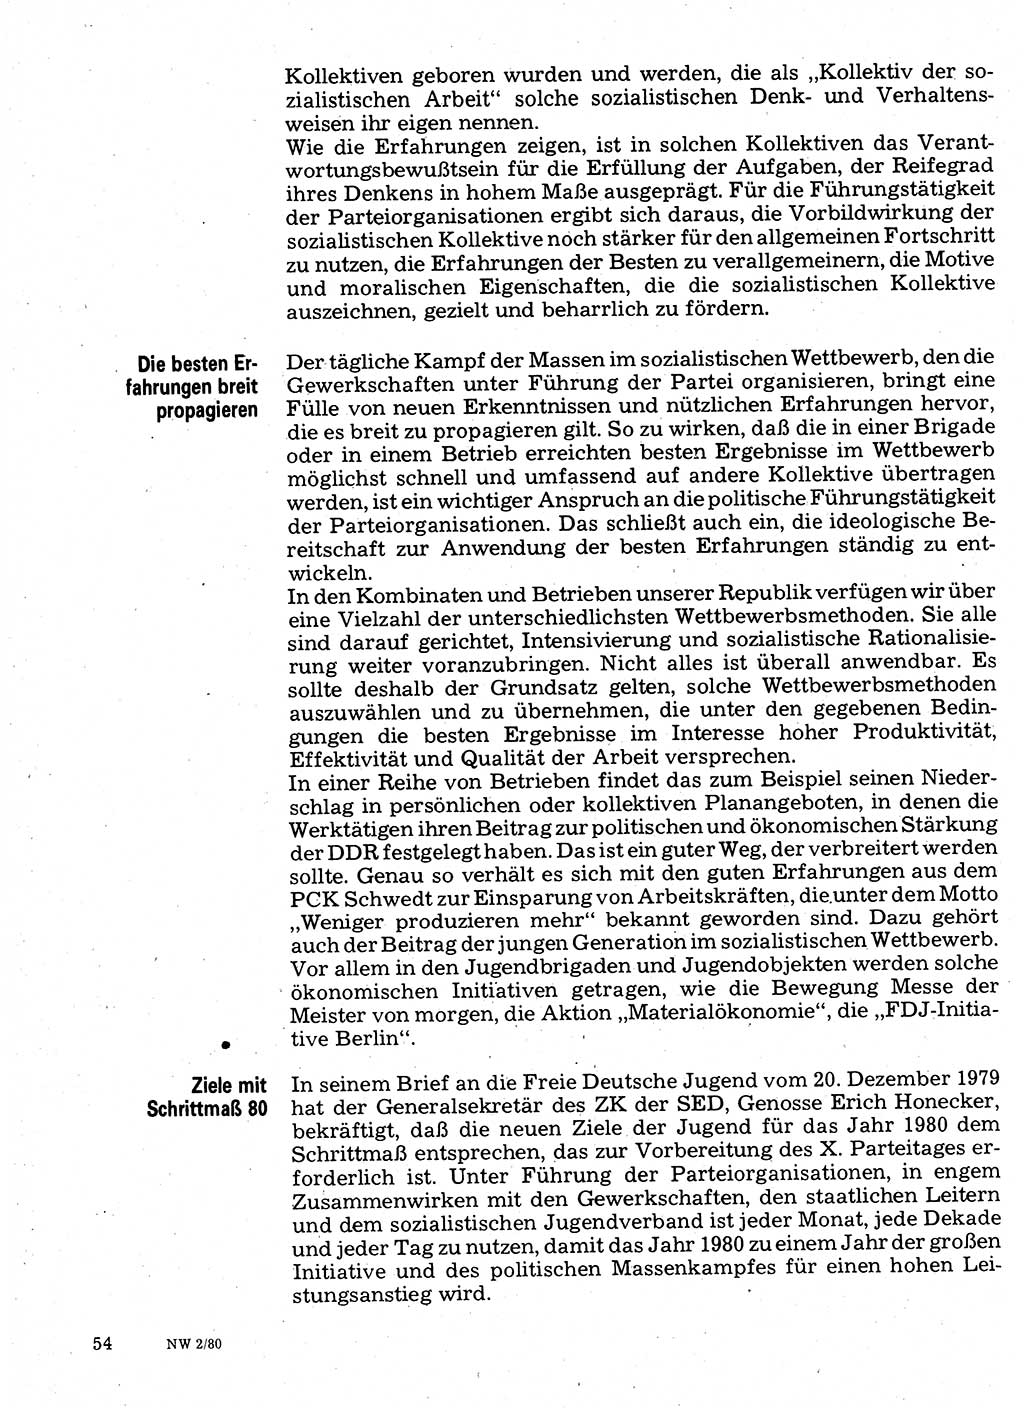 Neuer Weg (NW), Organ des Zentralkomitees (ZK) der SED (Sozialistische Einheitspartei Deutschlands) für Fragen des Parteilebens, 35. Jahrgang [Deutsche Demokratische Republik (DDR)] 1980, Seite 54 (NW ZK SED DDR 1980, S. 54)